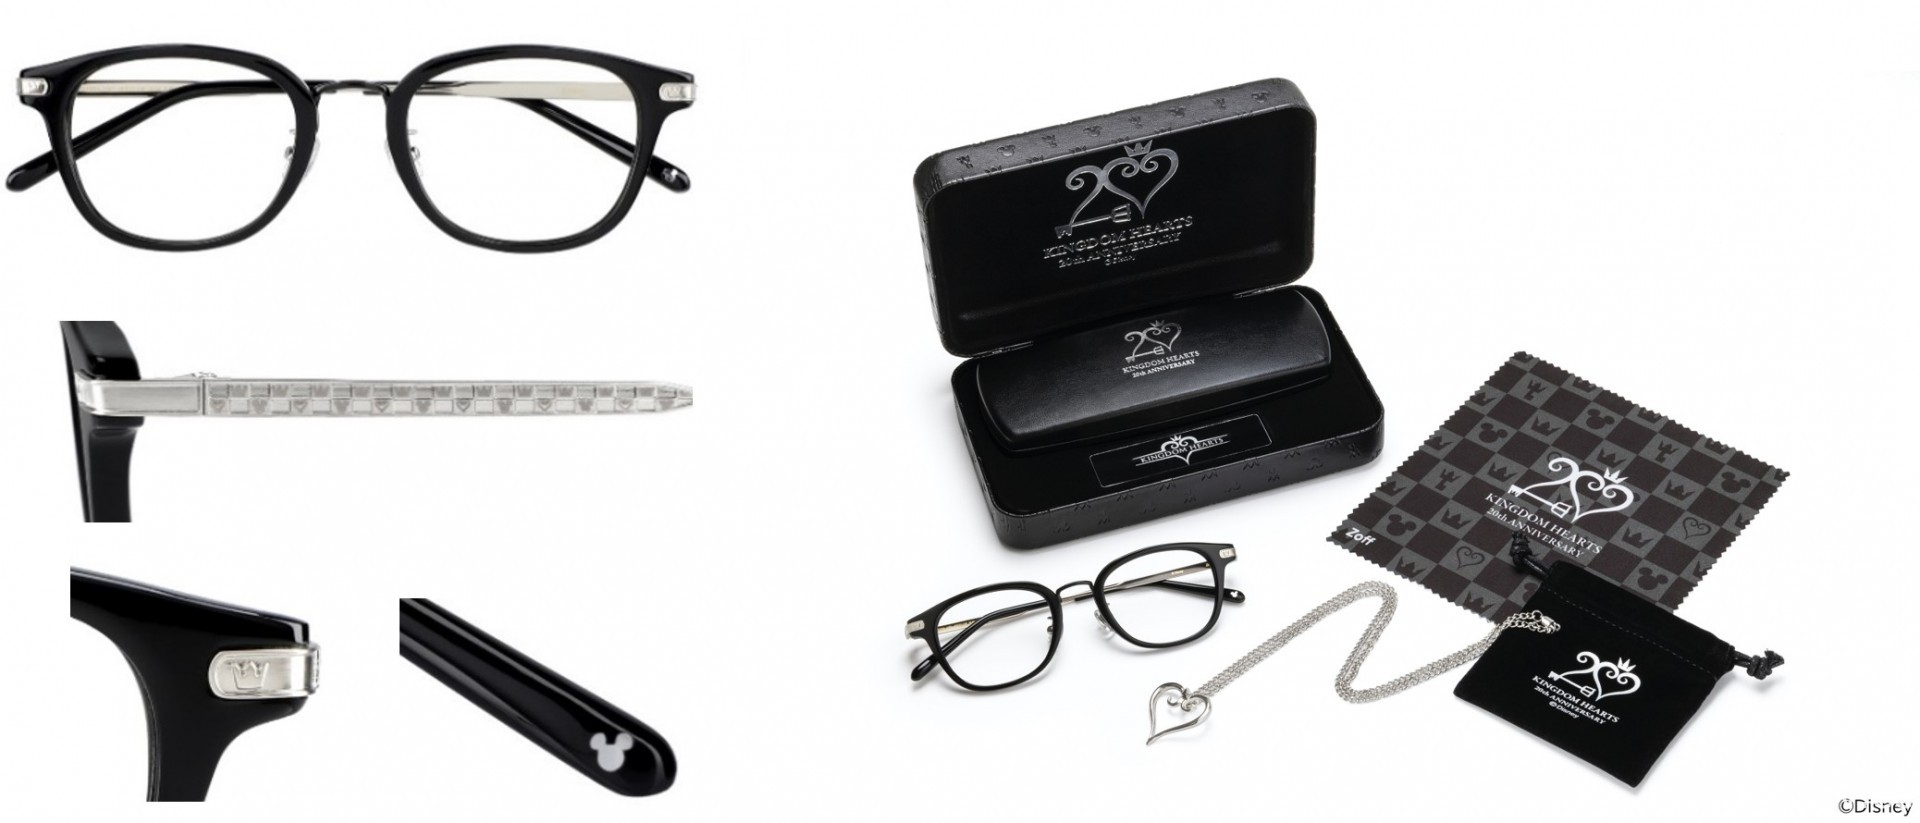 Zoff《王国之心》系列 20 周年纪念眼镜于官方线上商城开放预订